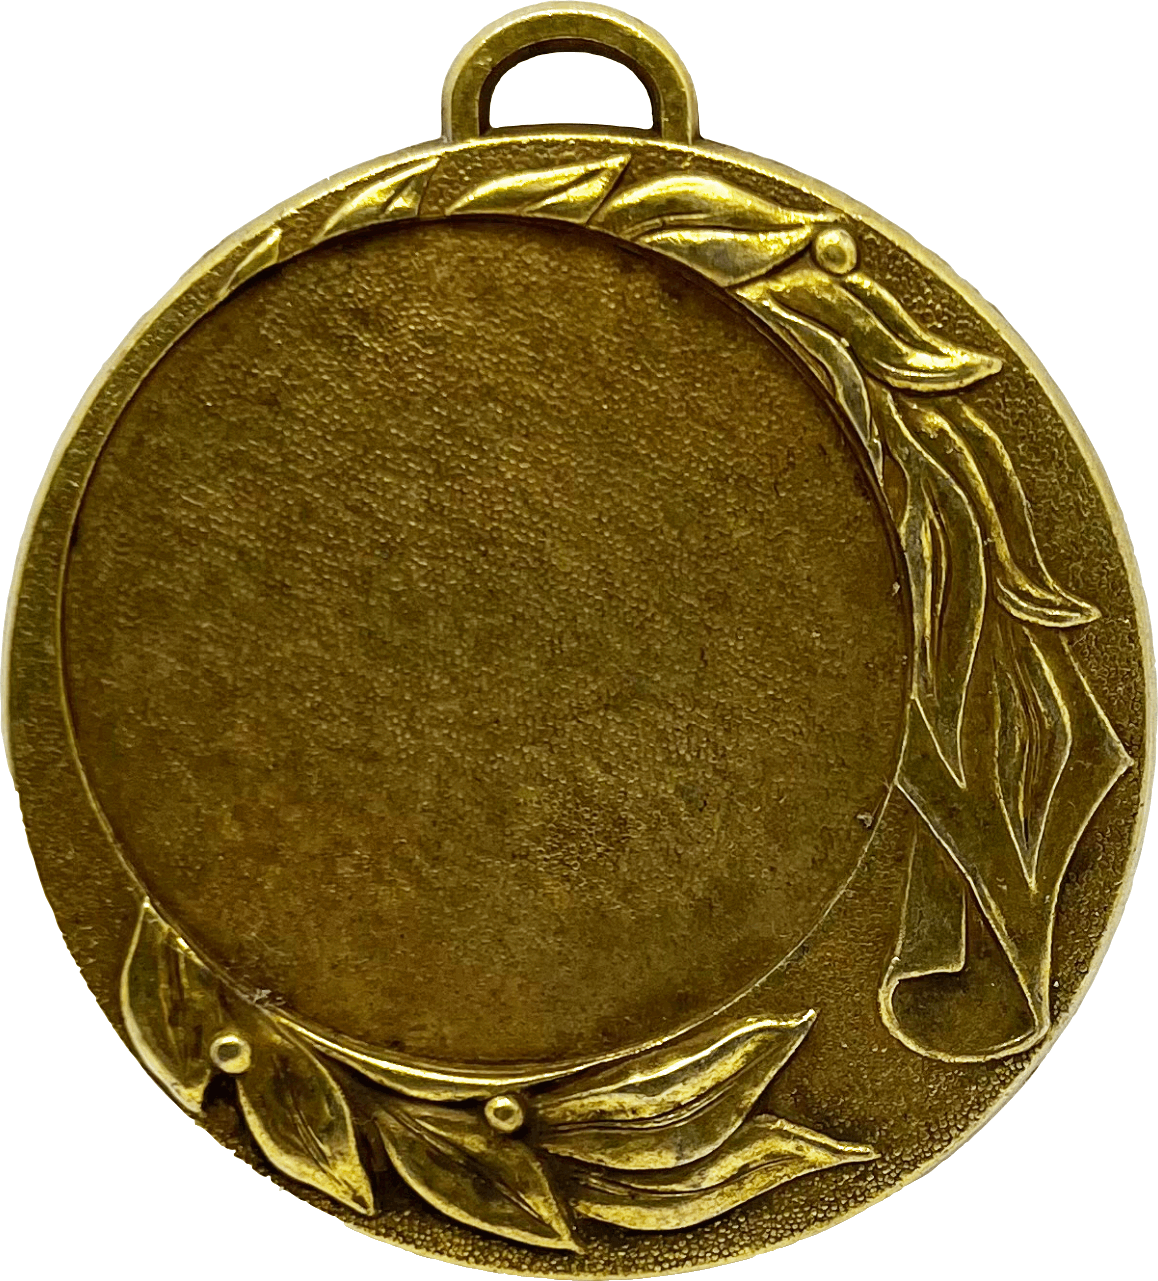 Medaille in der Farbe Altgold inkl. Band u. Emblem